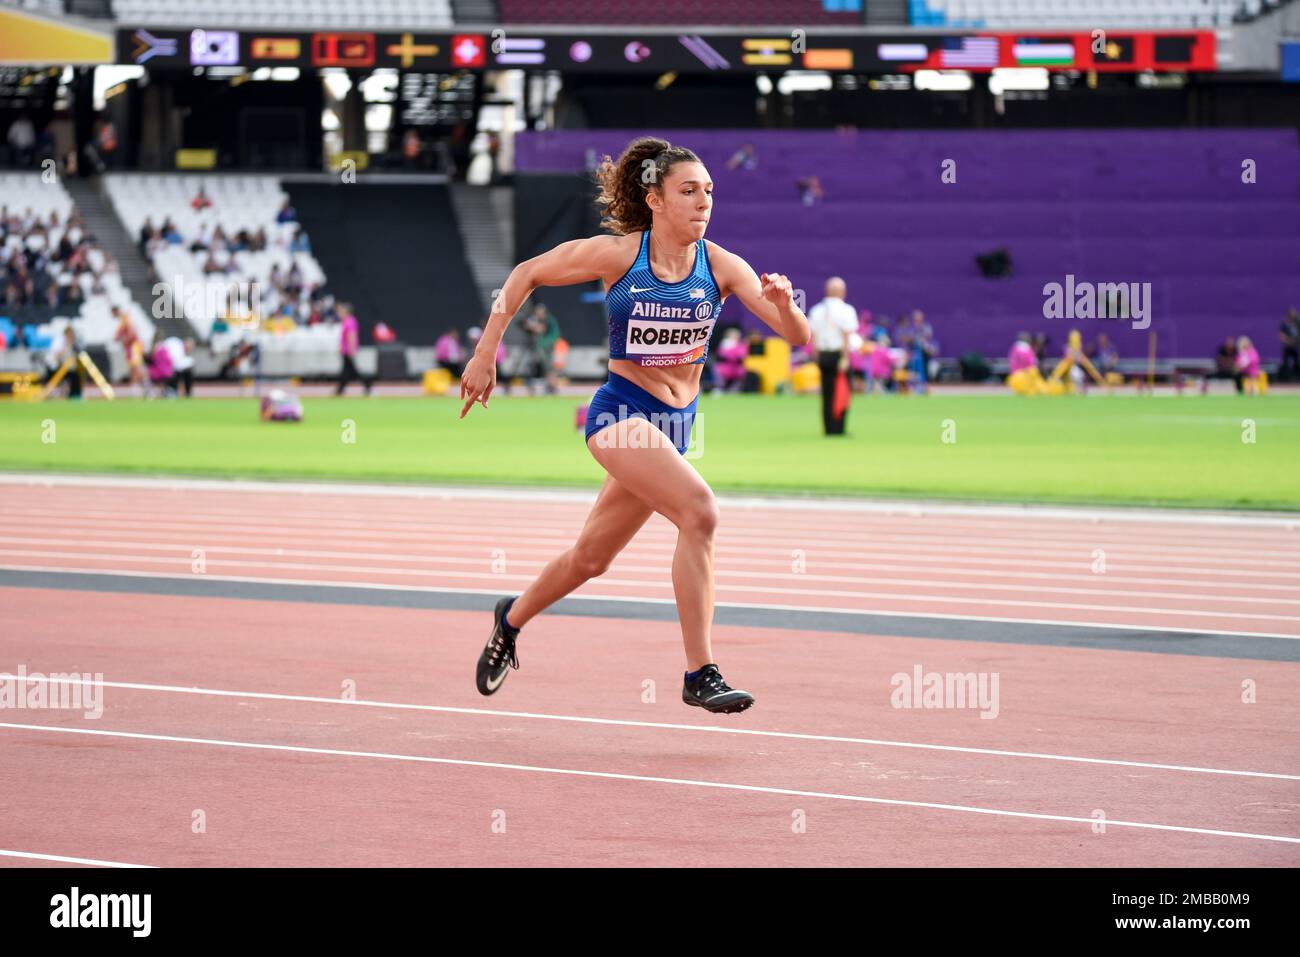 Jaleen Roberts compitiendo en el Campeonato Mundial de Atletismo 2017 salto  de largo T37 en el Estadio Olímpico, Londres, Reino Unido. Atleta  estadounidense. EE.UU Fotografía de stock - Alamy